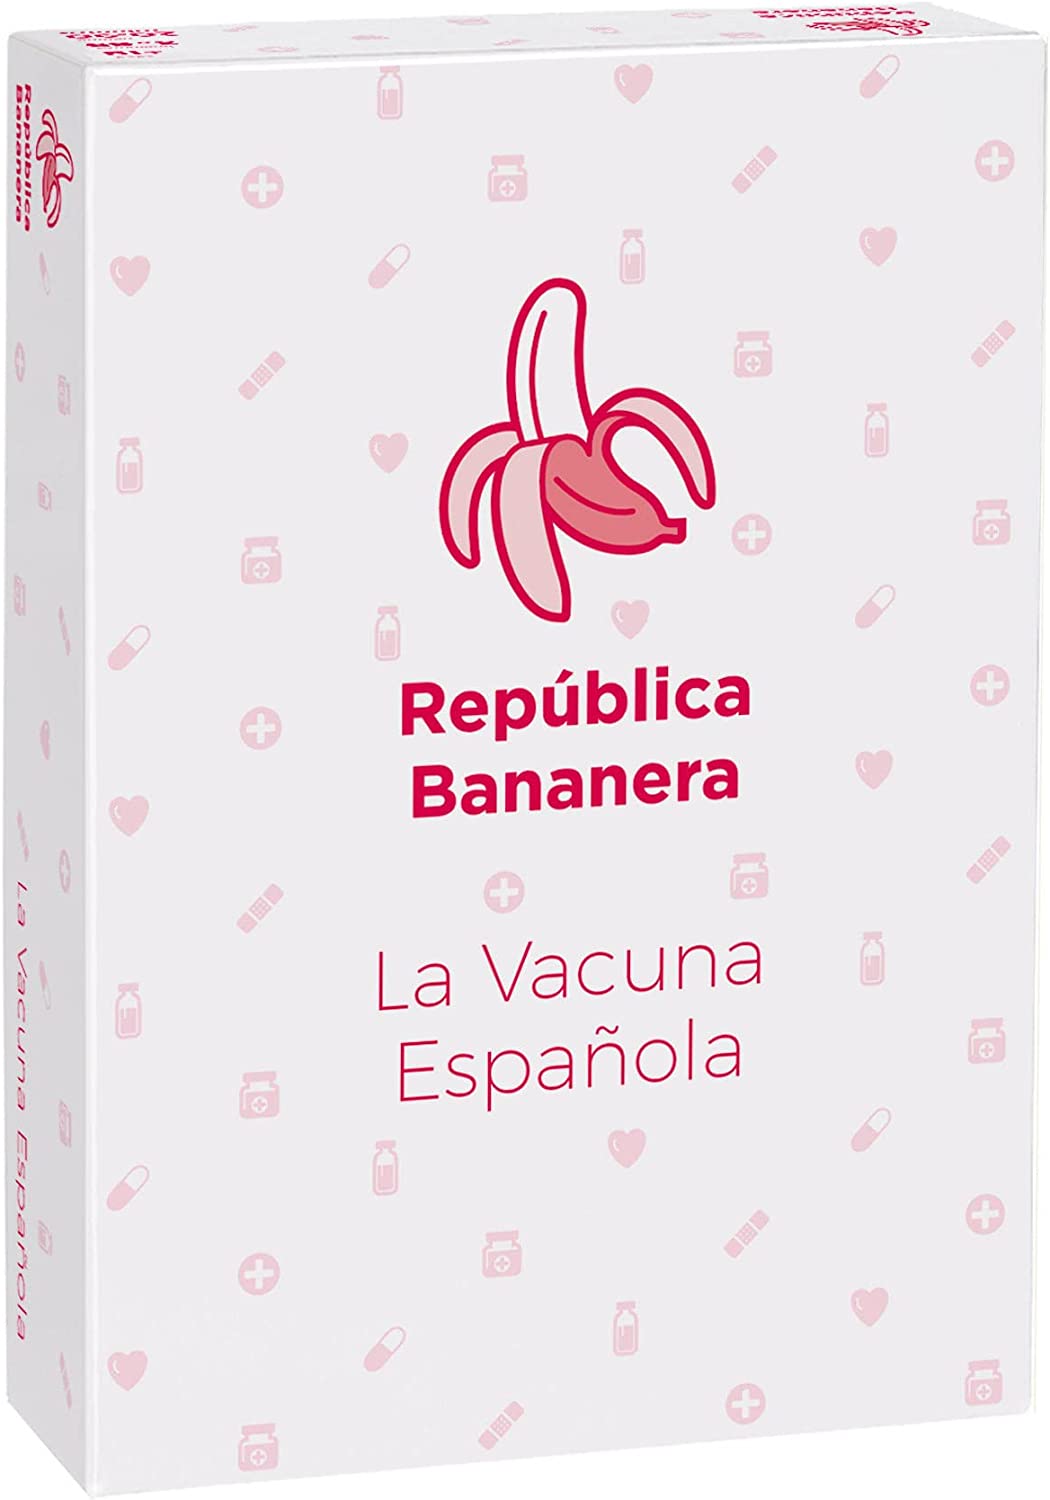 Ver categoría de la vacuna española